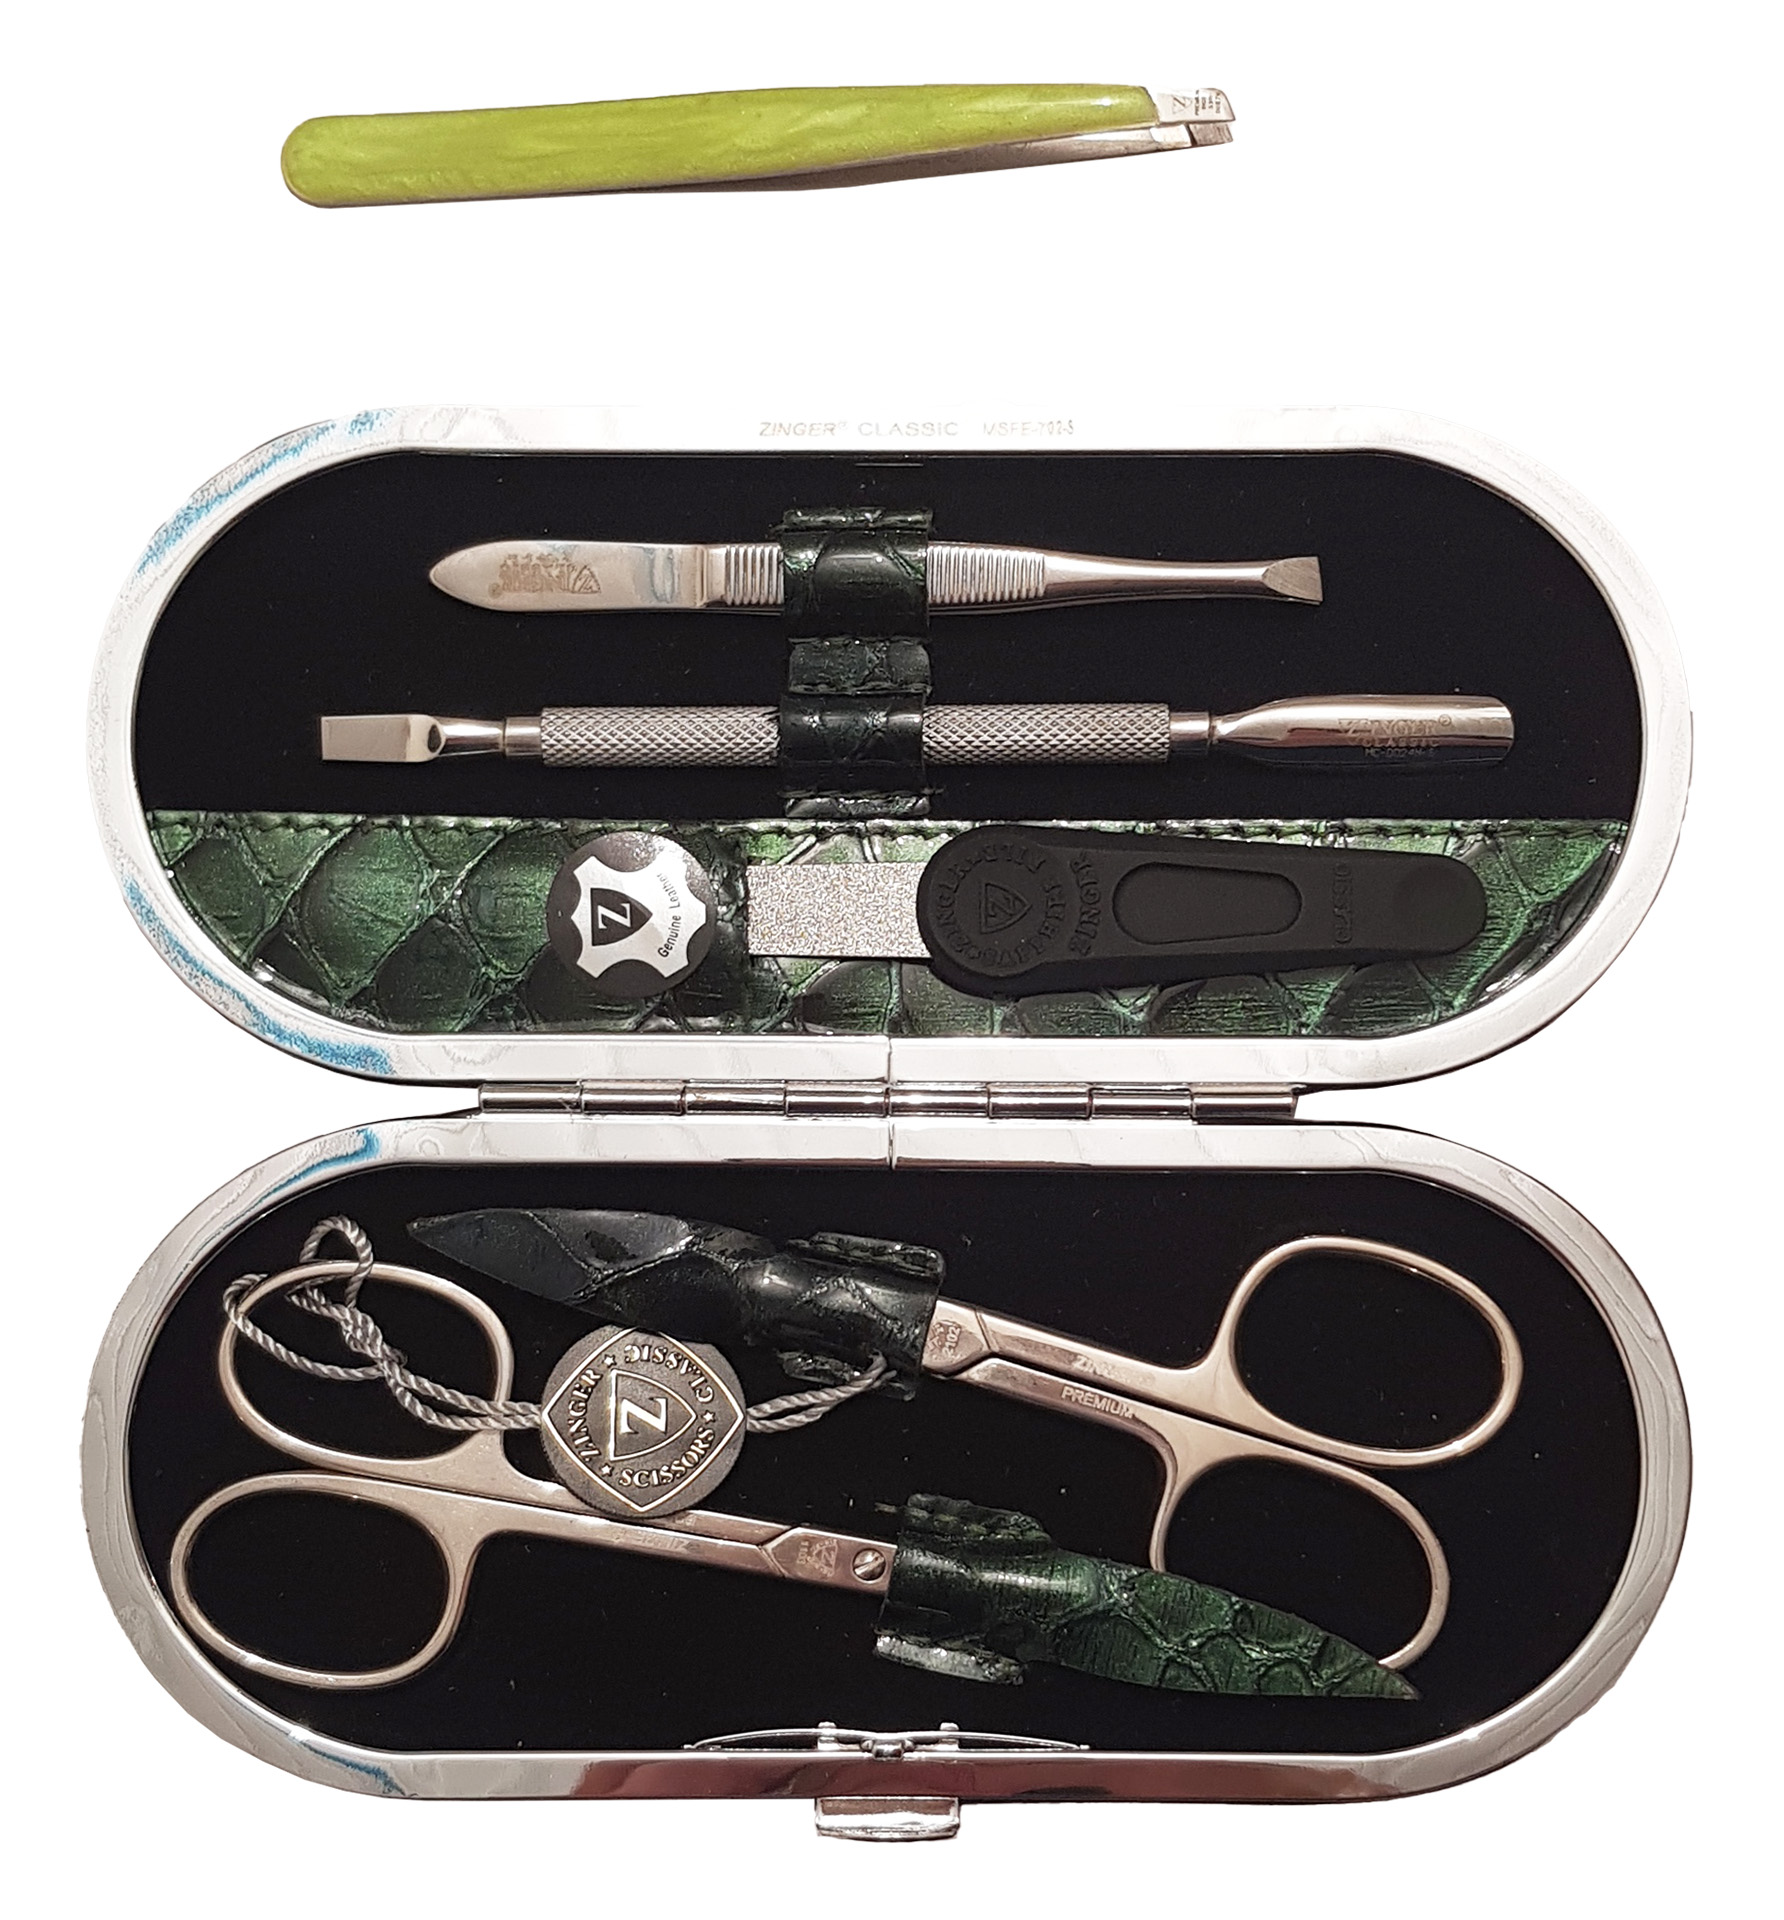 Маникюрный набор Premium-качества Zinger MSFE-702-3 S, 5 предметов + пинцет, тёмно-зелёный маникюрная палочка с керамическим корректором dewal